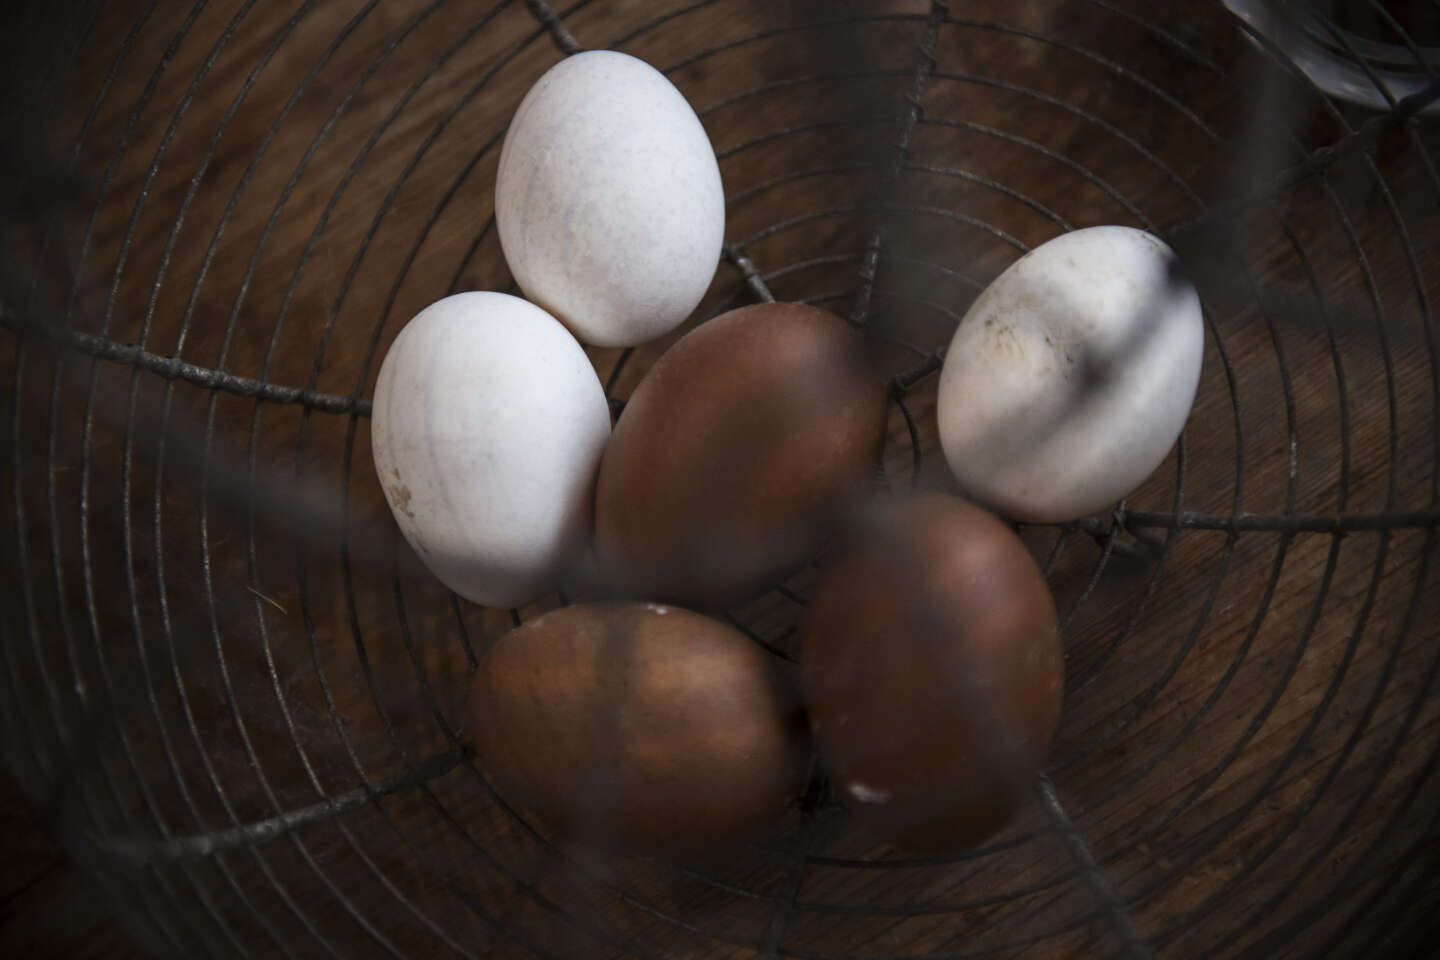 La contamination des œufs révèle la pollution généralisée de la région parisienne aux dioxines et aux « polluants éternels »